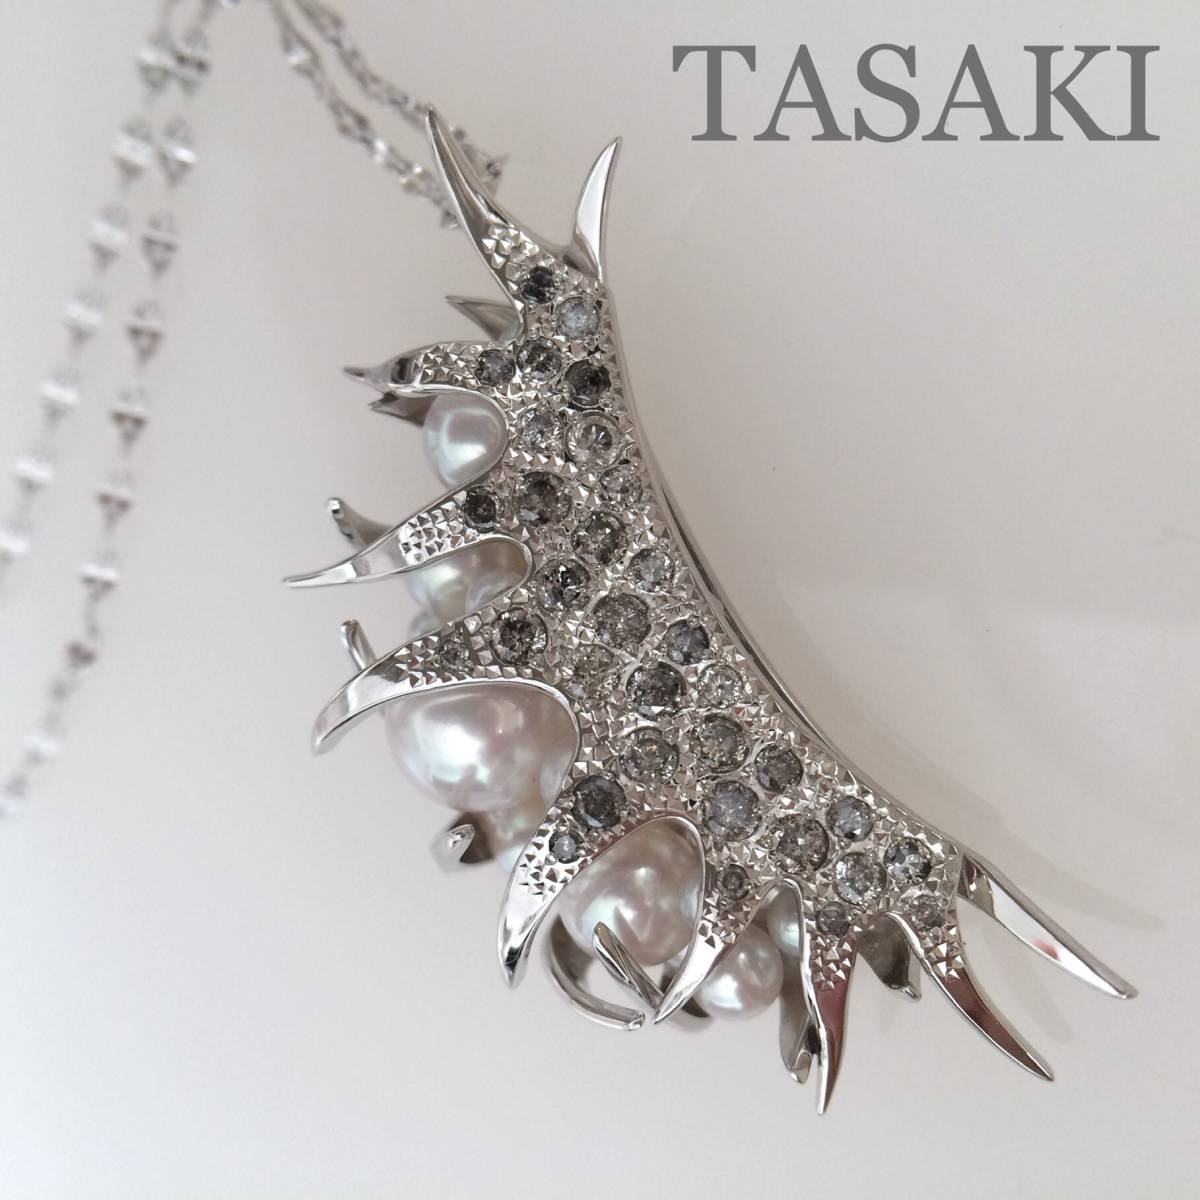 TASAKI デインジャー トラップ ダイヤモンド ペンダント ロングネックレス K18WG ダイヤ